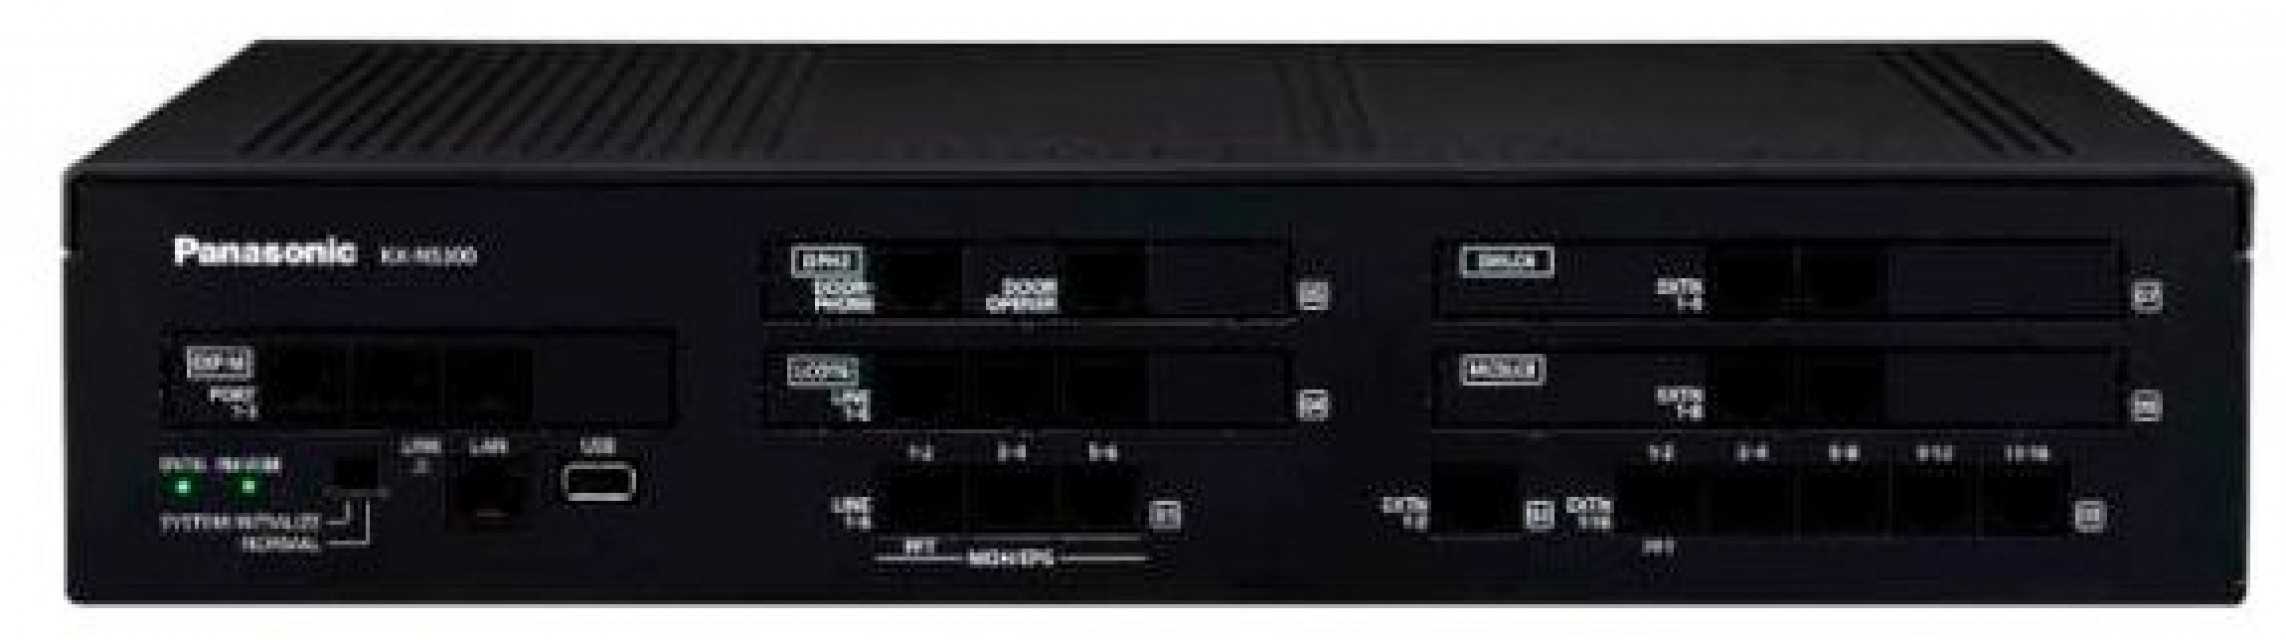 Panasonic KX-NS300 Hybrid PBX System